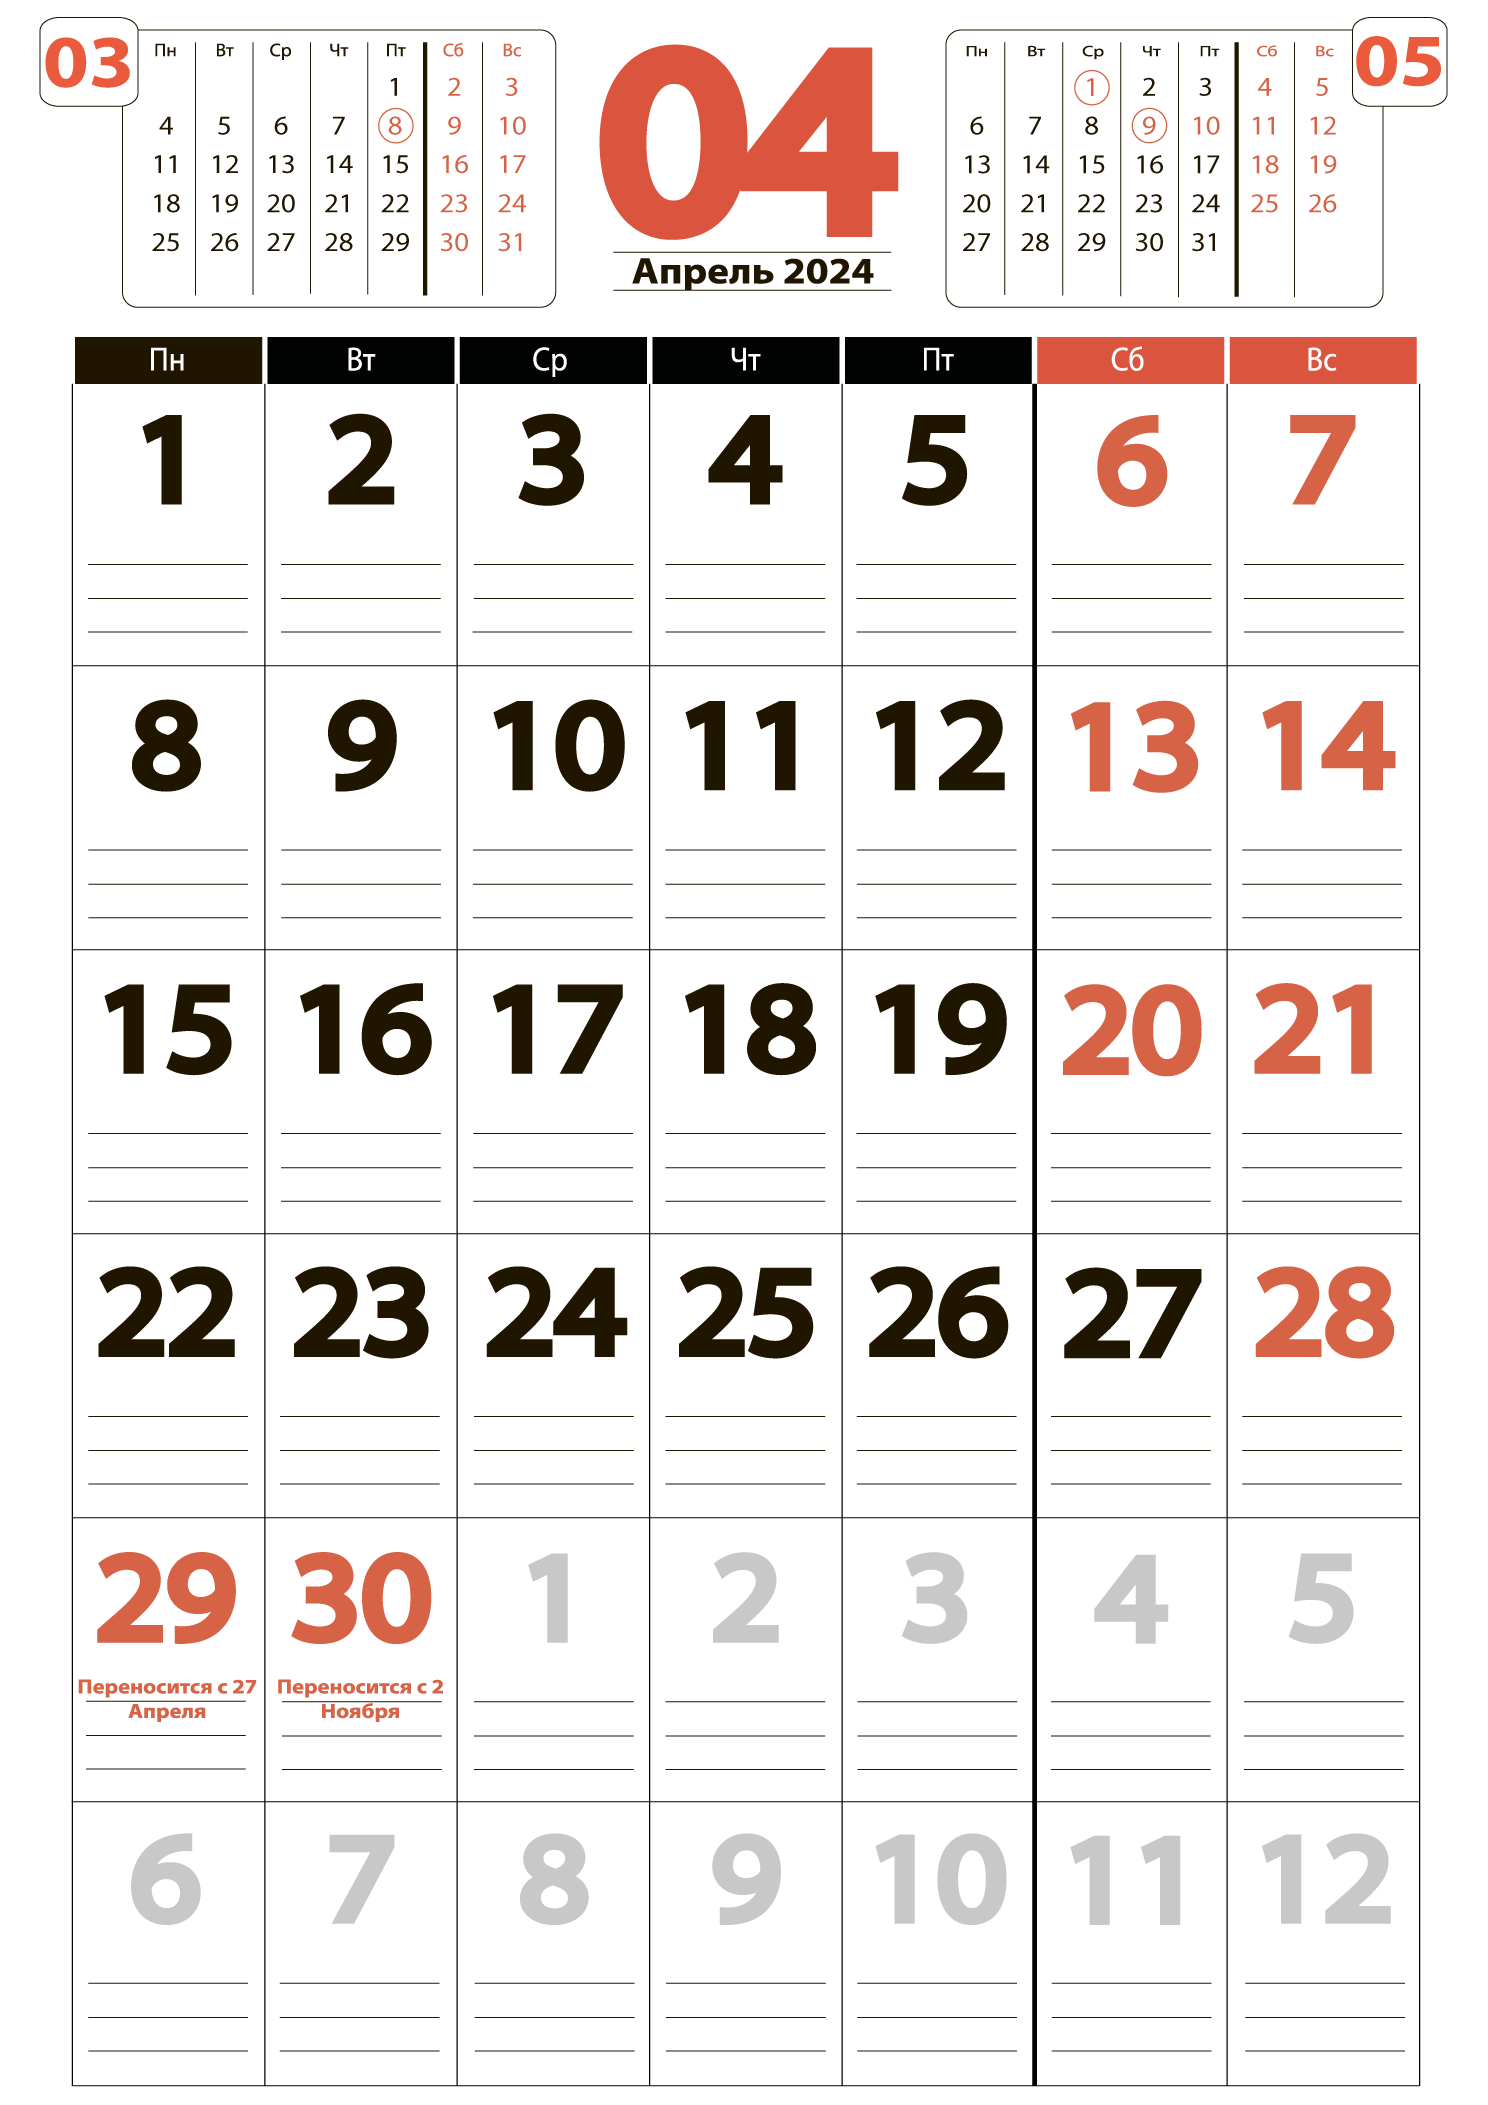 Печать крупного календаря на апрель 2024